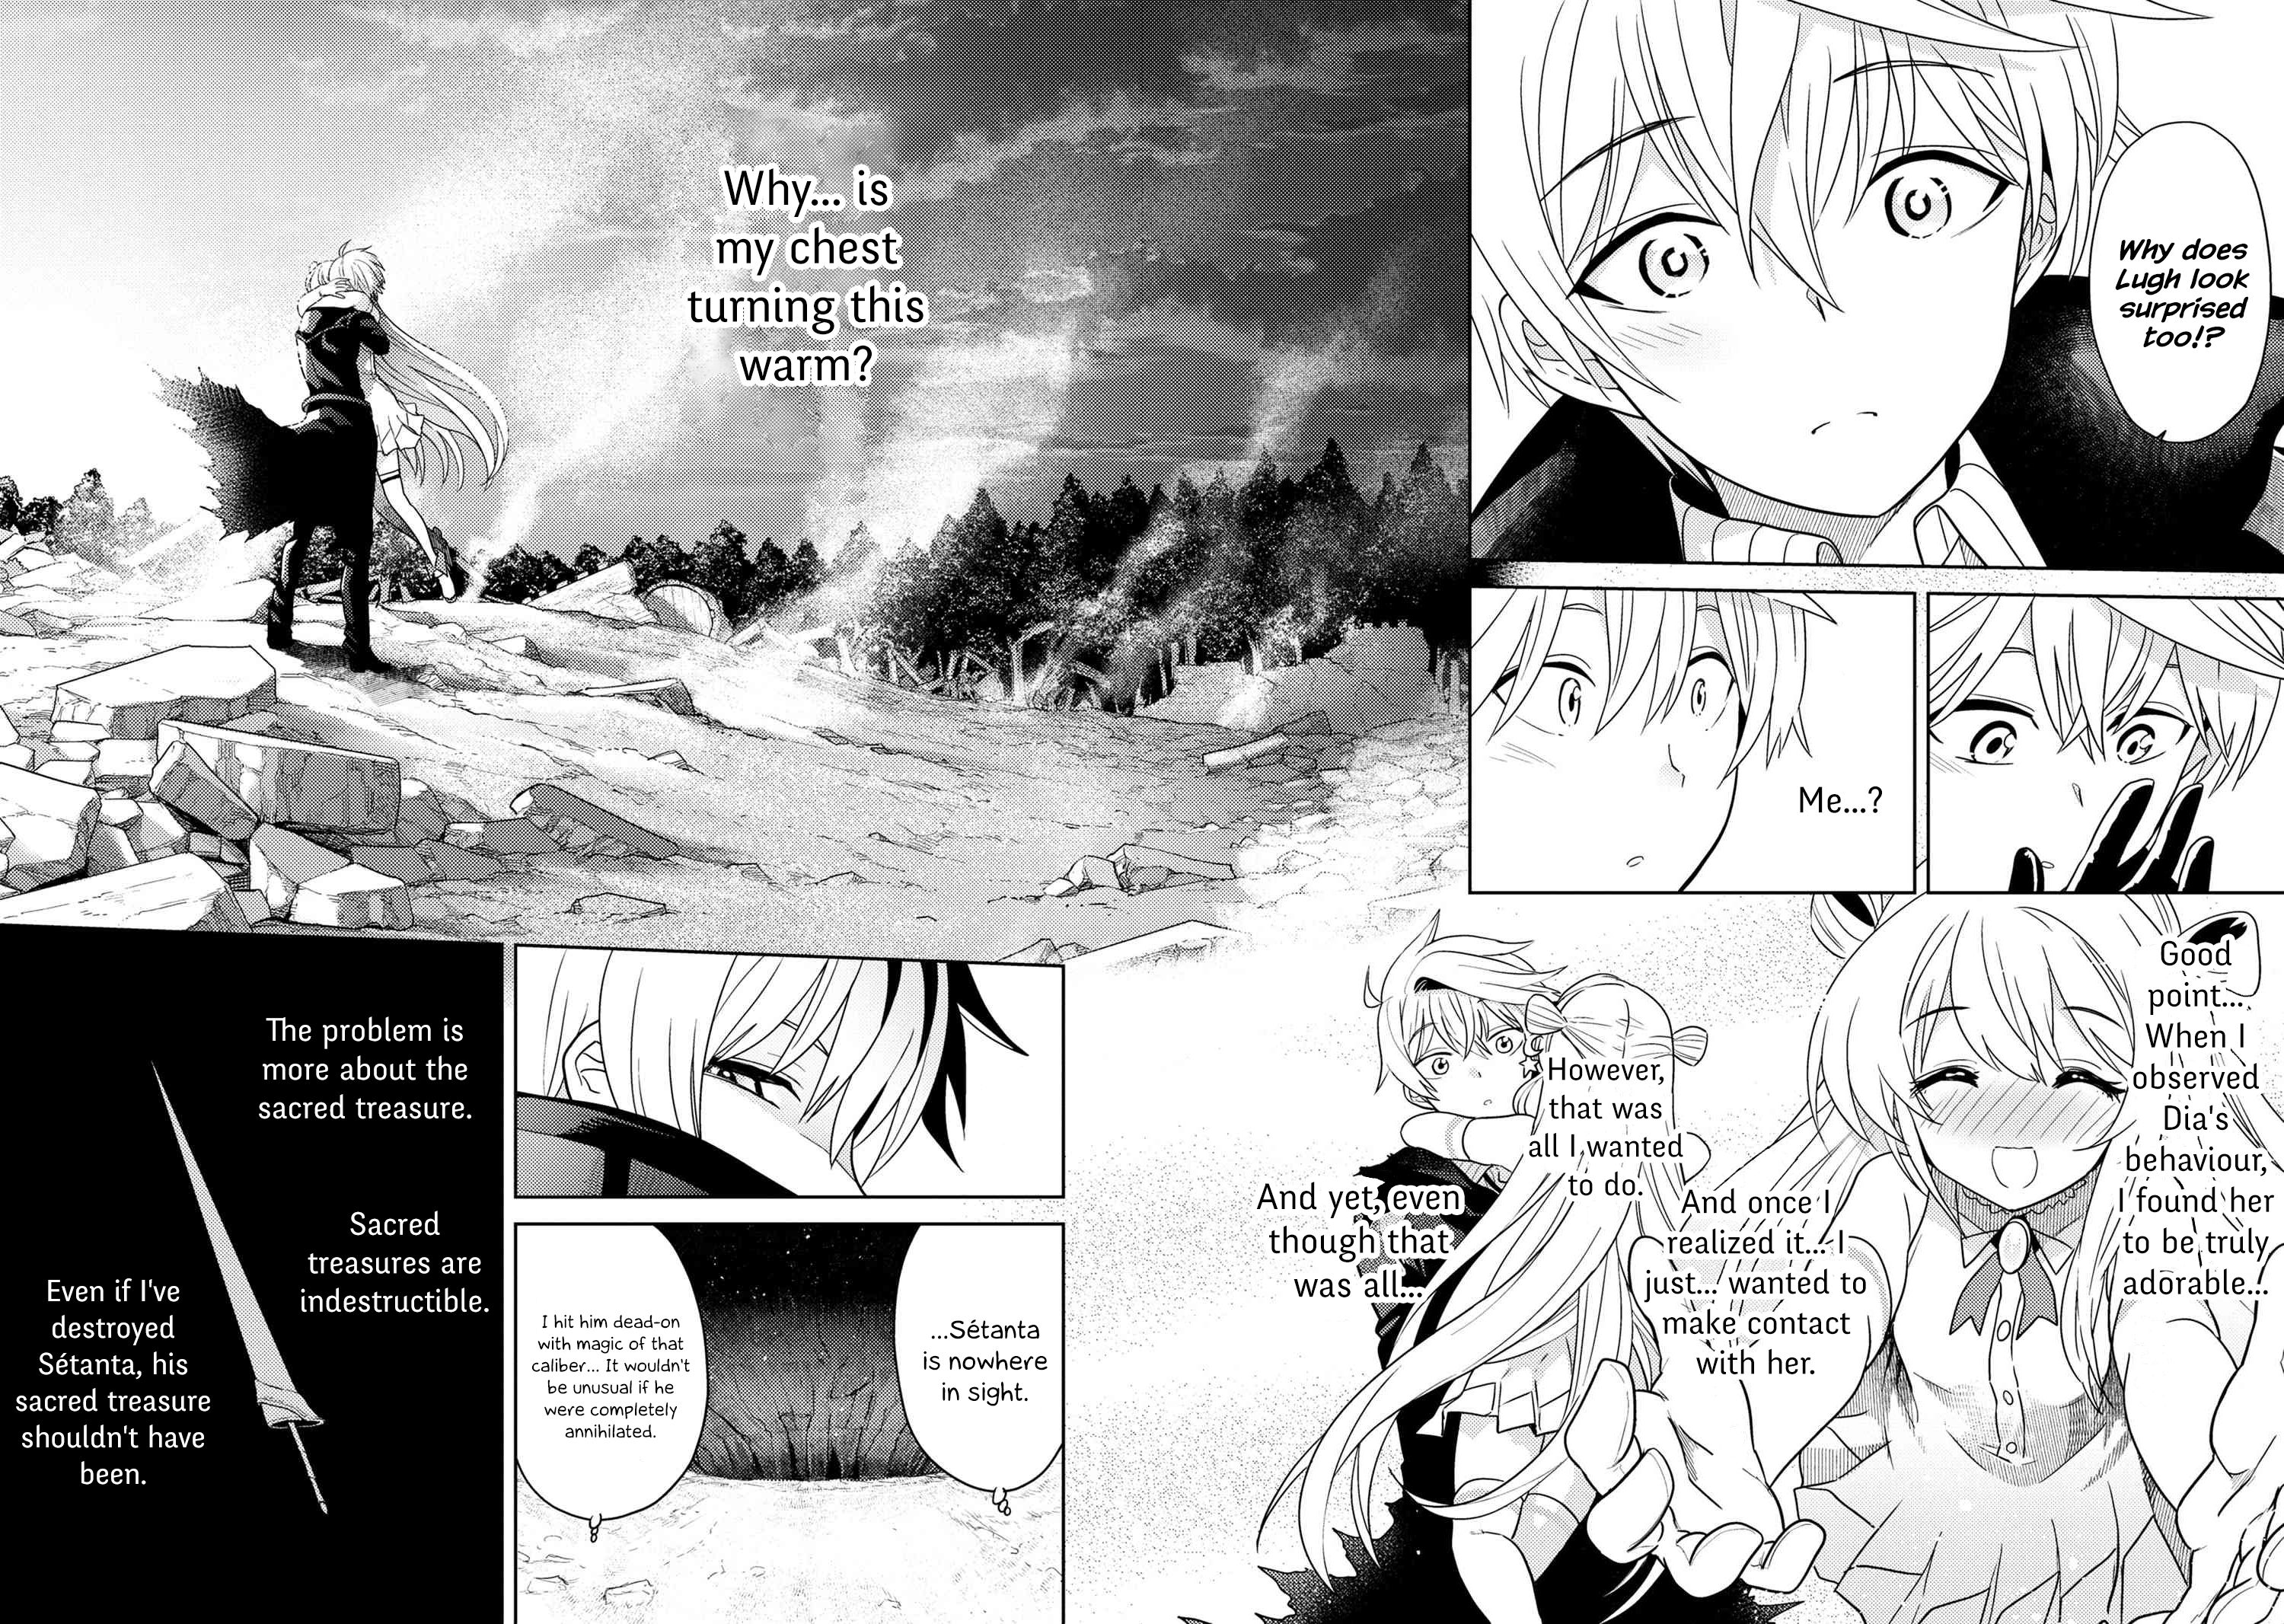 Read Sekai Saikyou no Assassin, isekai kizoku ni tensei suru 9